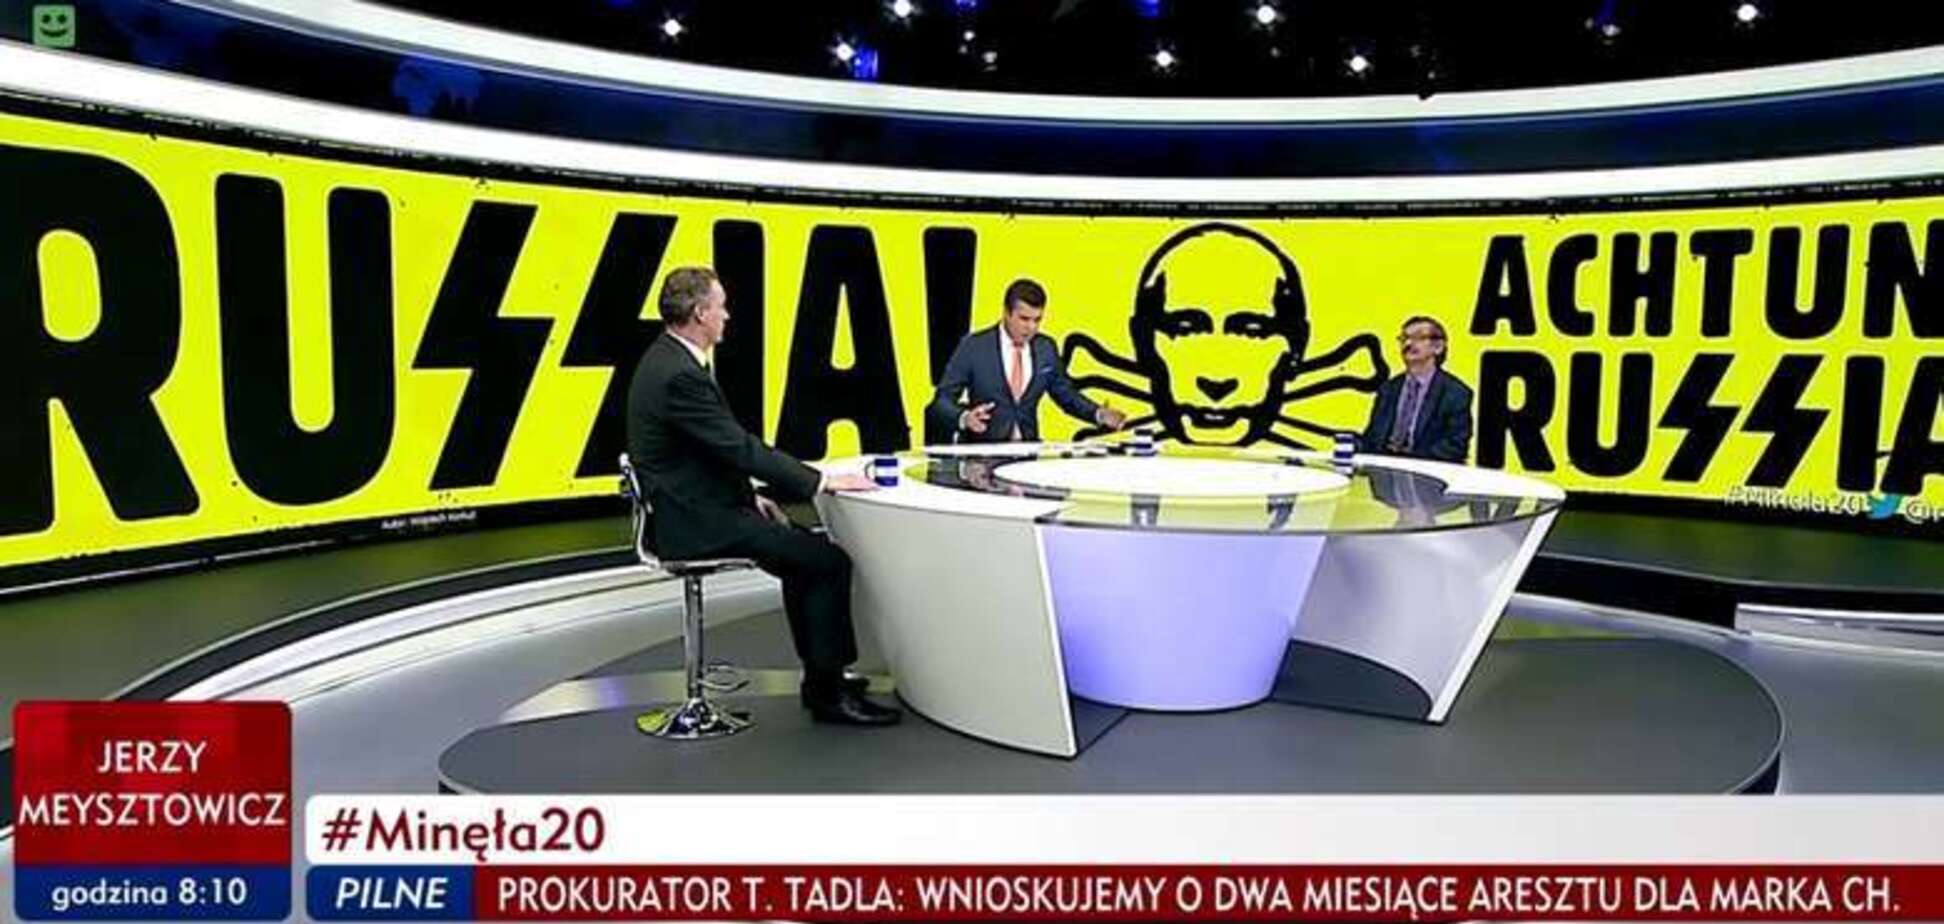 Польський телеканал порівняв режим Путіна із Третім Рейхом: знакове фото